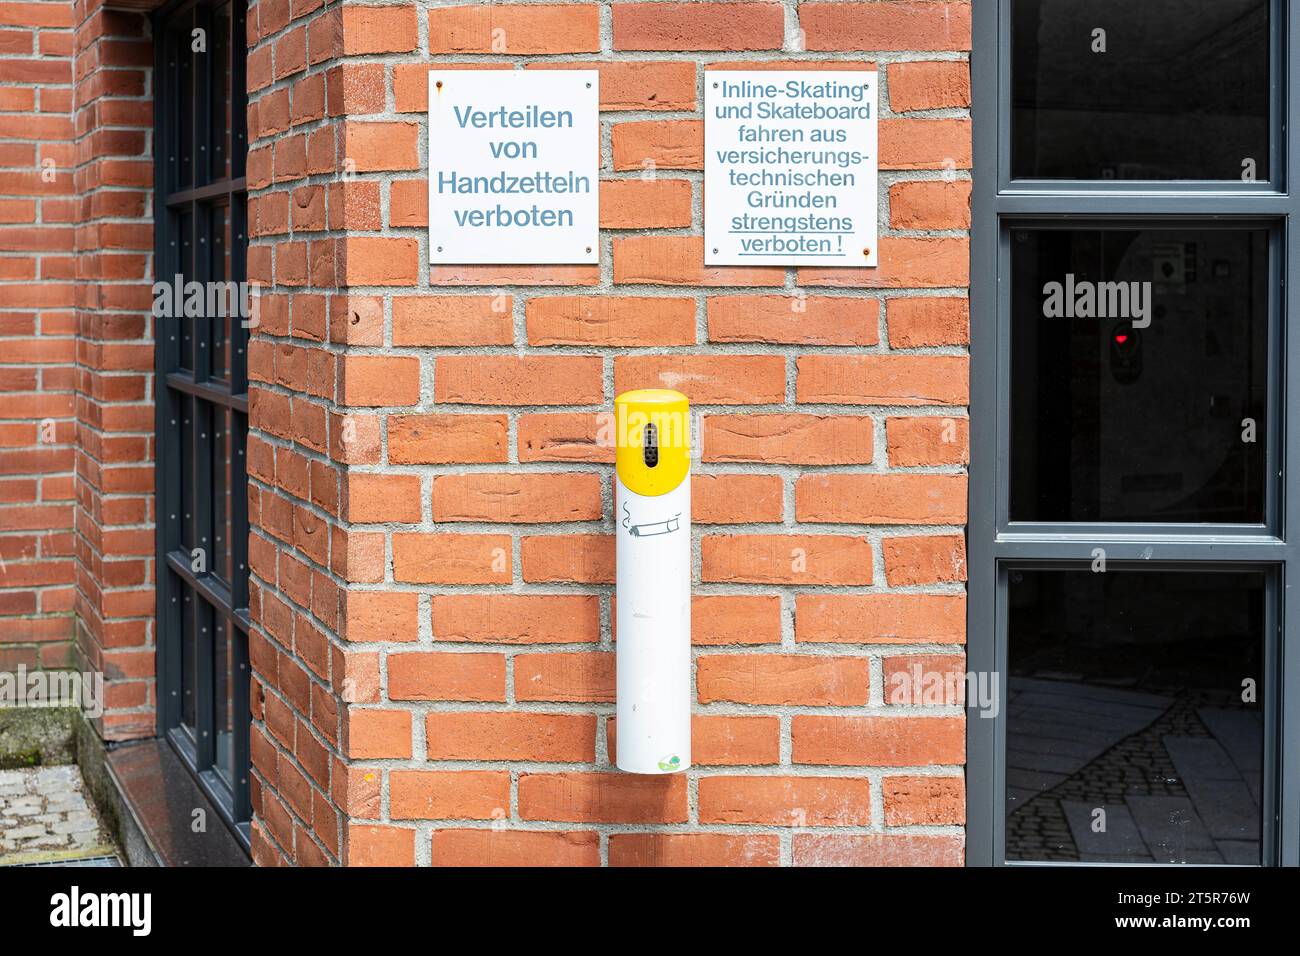 Verteilen von Handzetteln verboten, Warntafel an einer Ziegelmauer an einer Architektur in der Altstadt von Memmingen, Bayern, Deutschland. Stock Photo